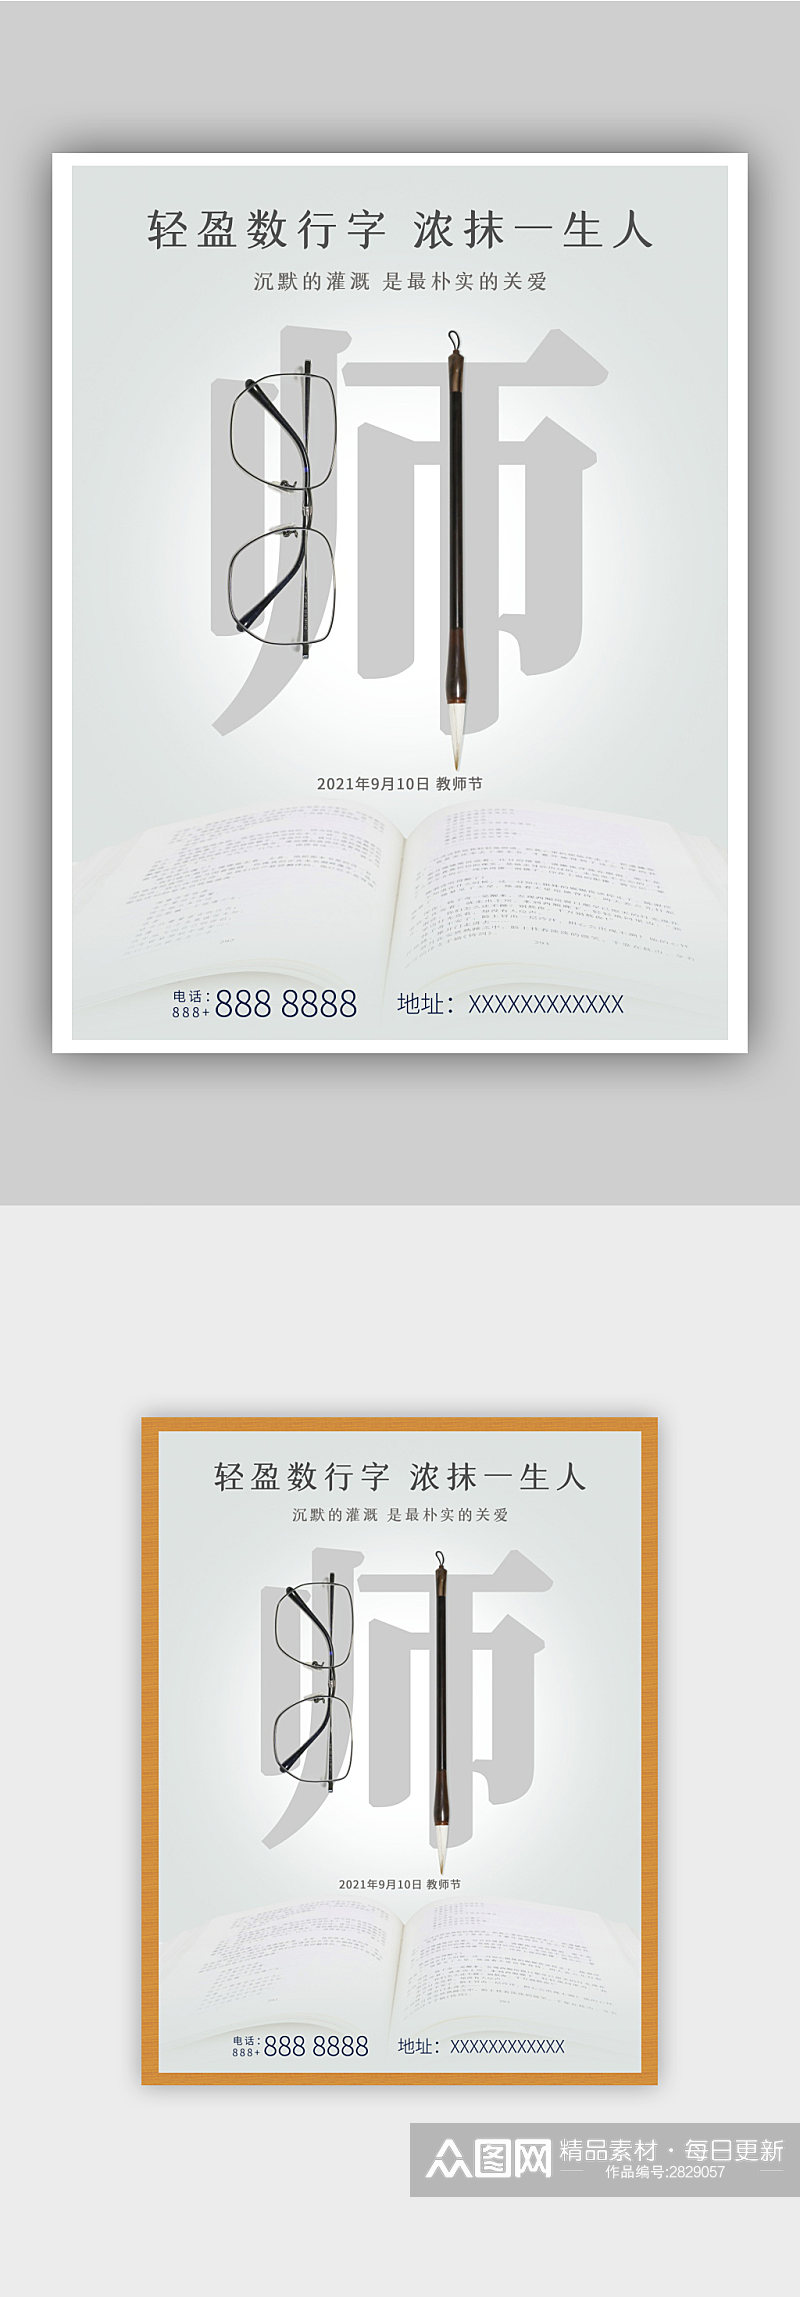 极简创意中国风毛笔感恩教师节节日宣传海报素材